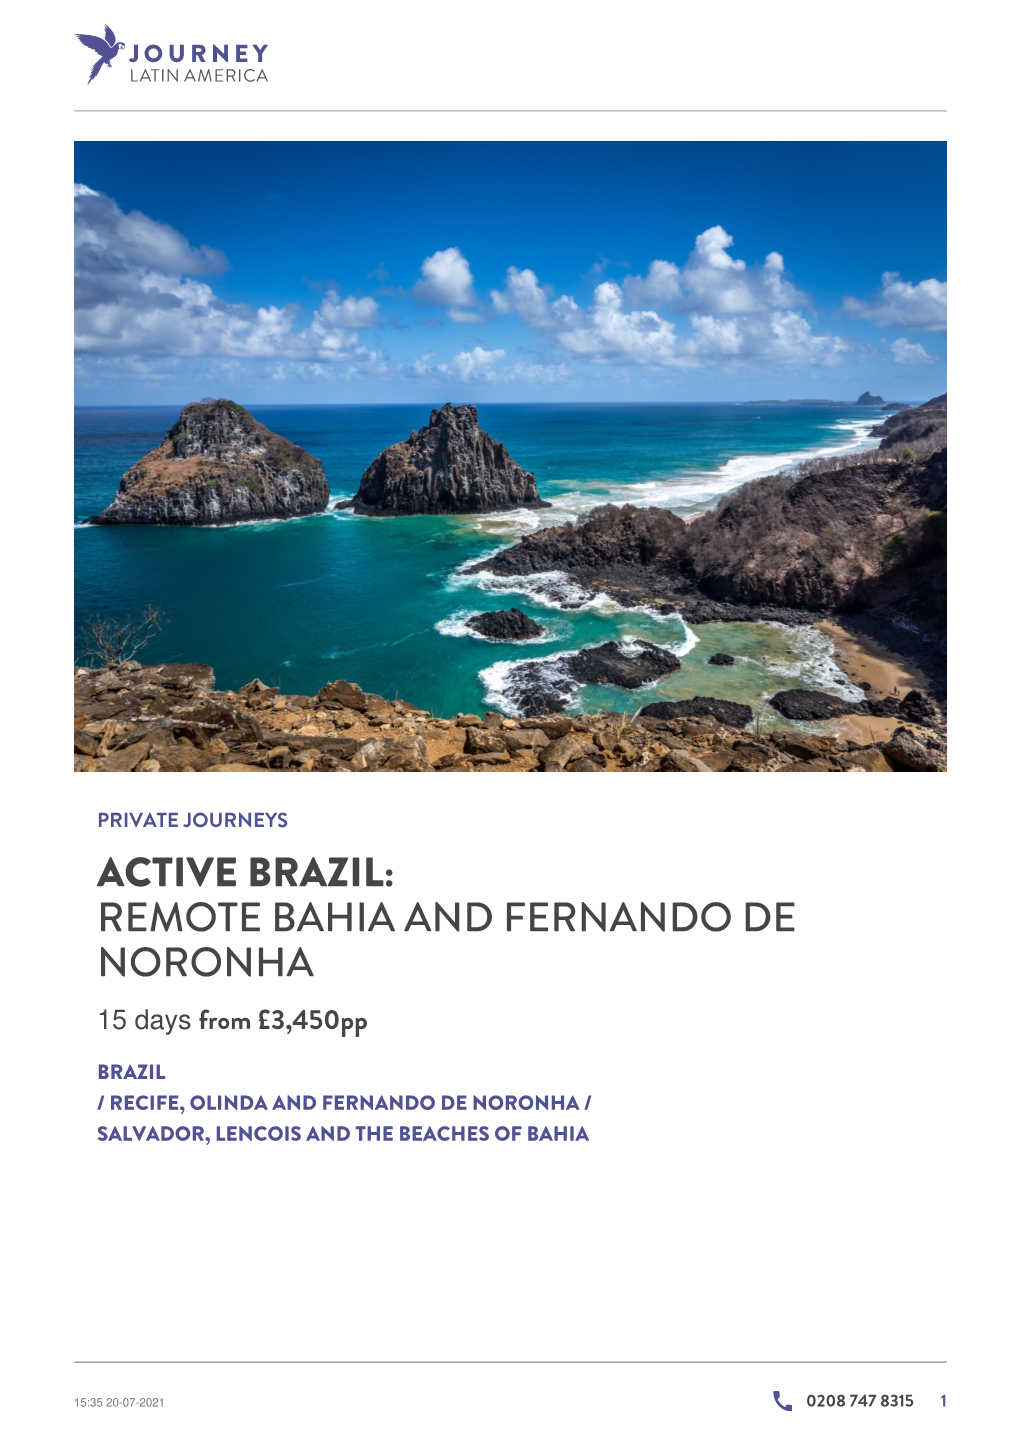 Remote Bahia and Fernando De Noronha